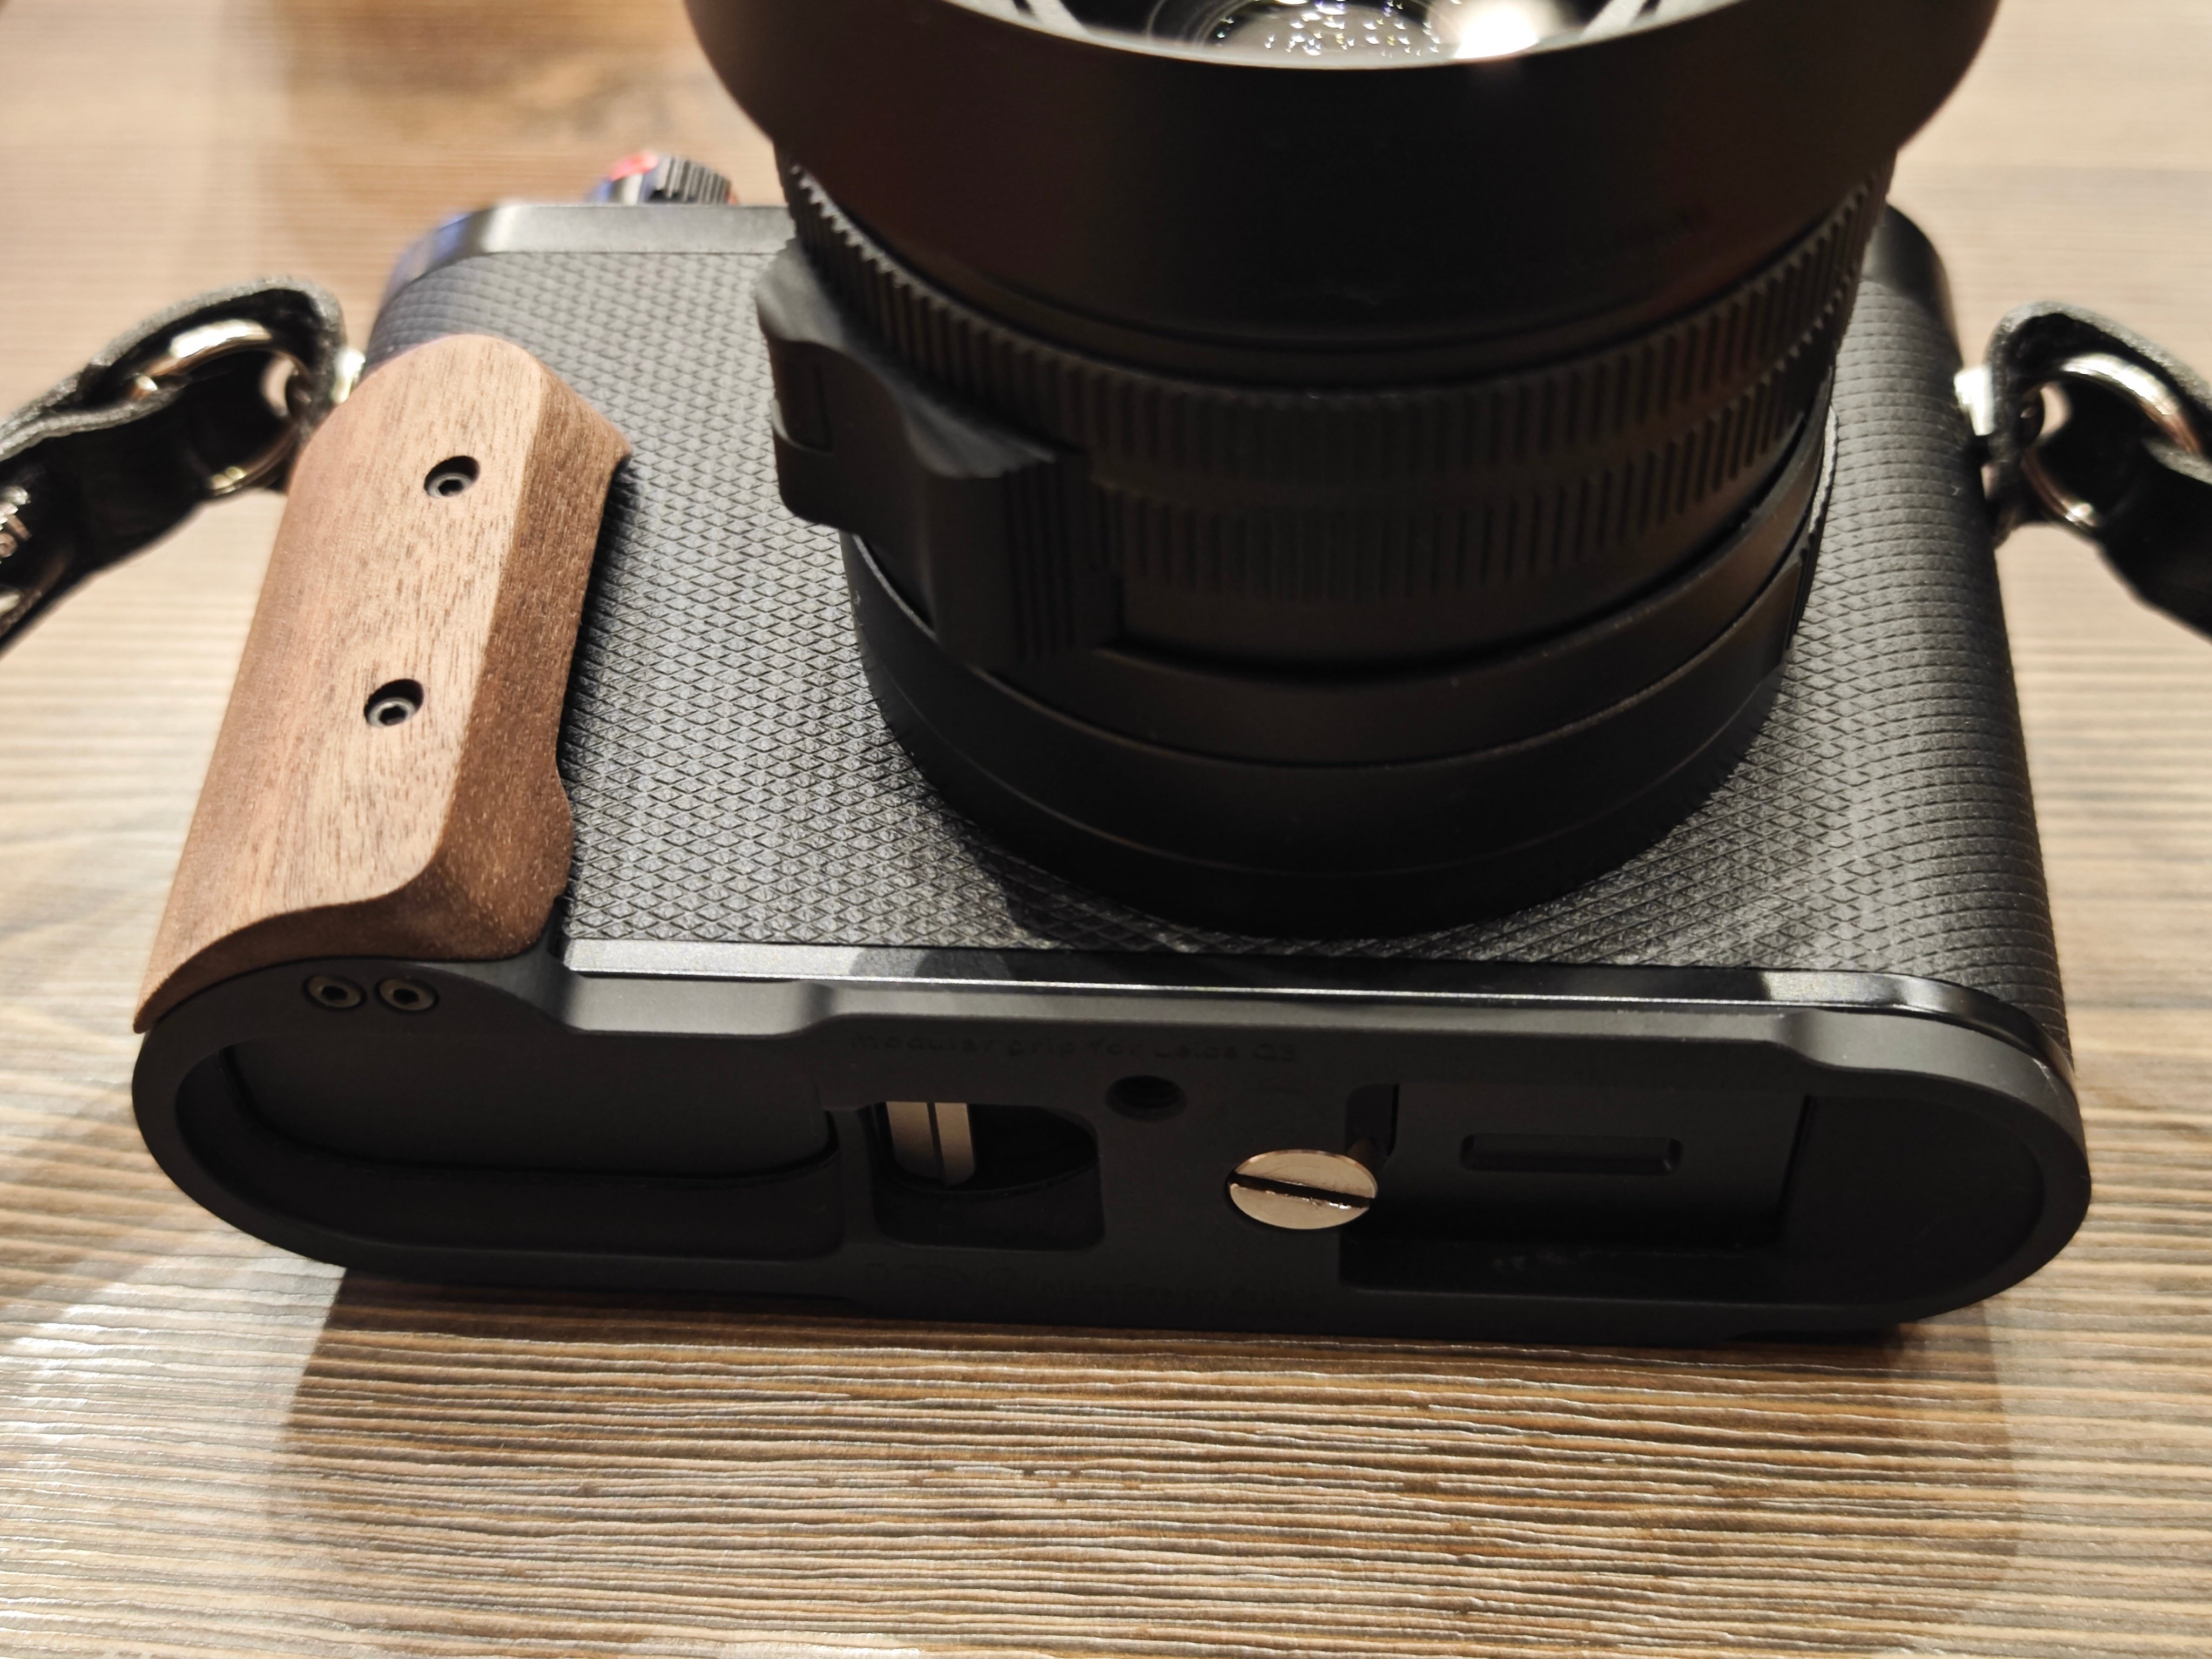 Leica (ライカ) Q3用 レンズフード